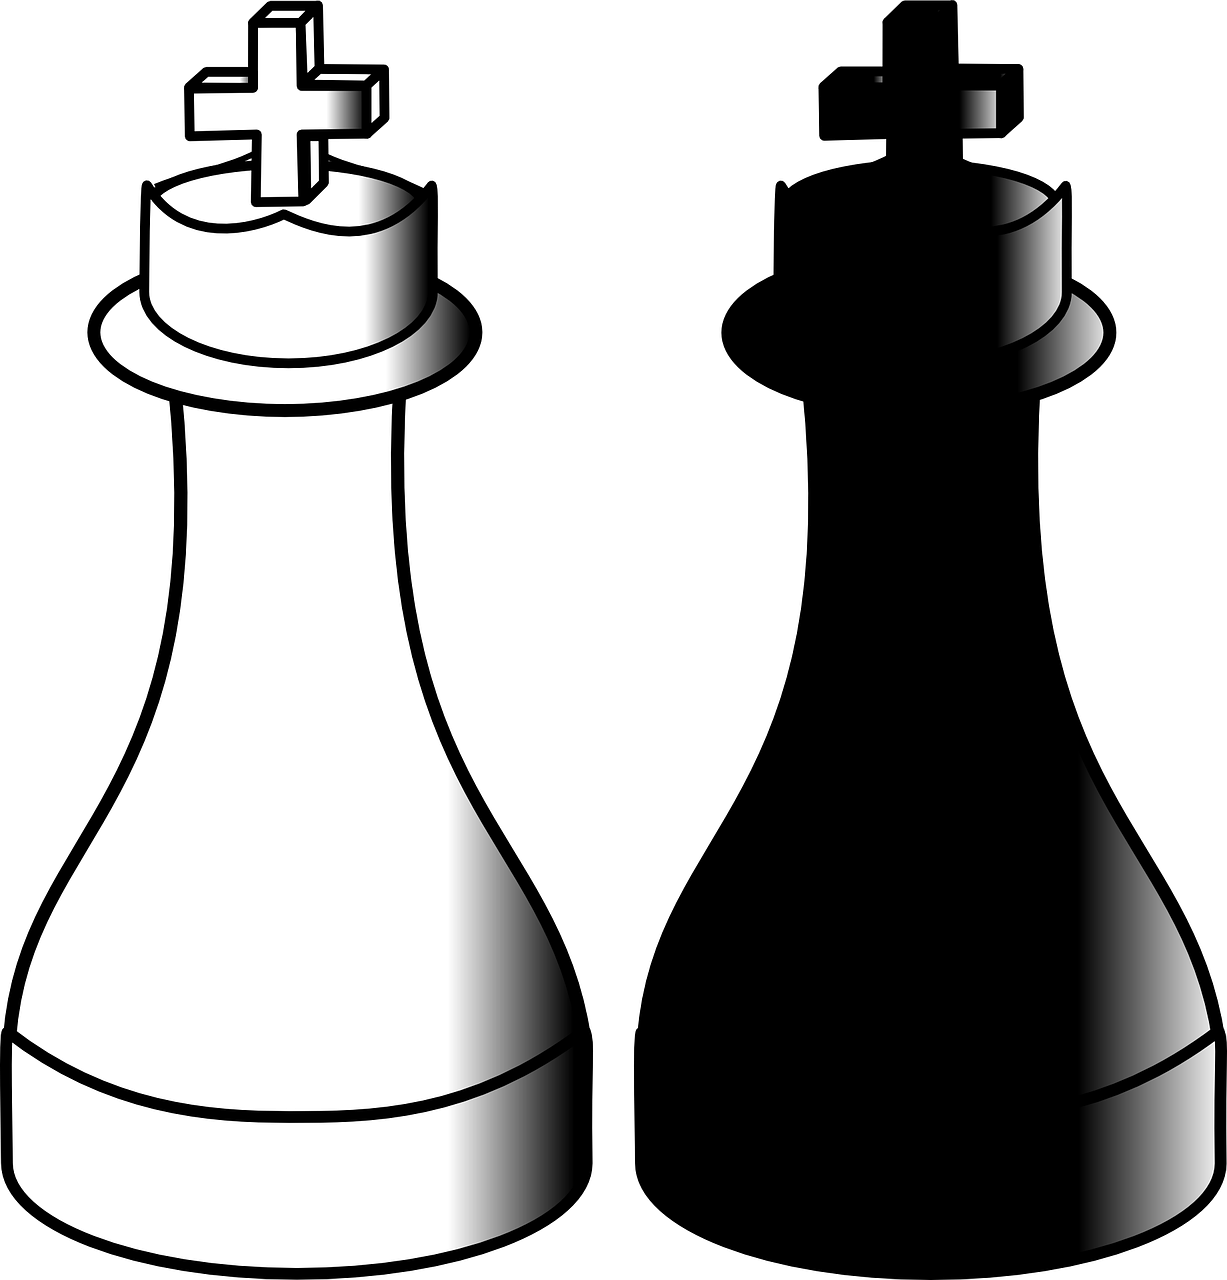 Šachmatai, Karaliai, Žaidimas, Vienetai, Juoda, Balta, Strategija, Varzybos, Žaisti, Pergalė